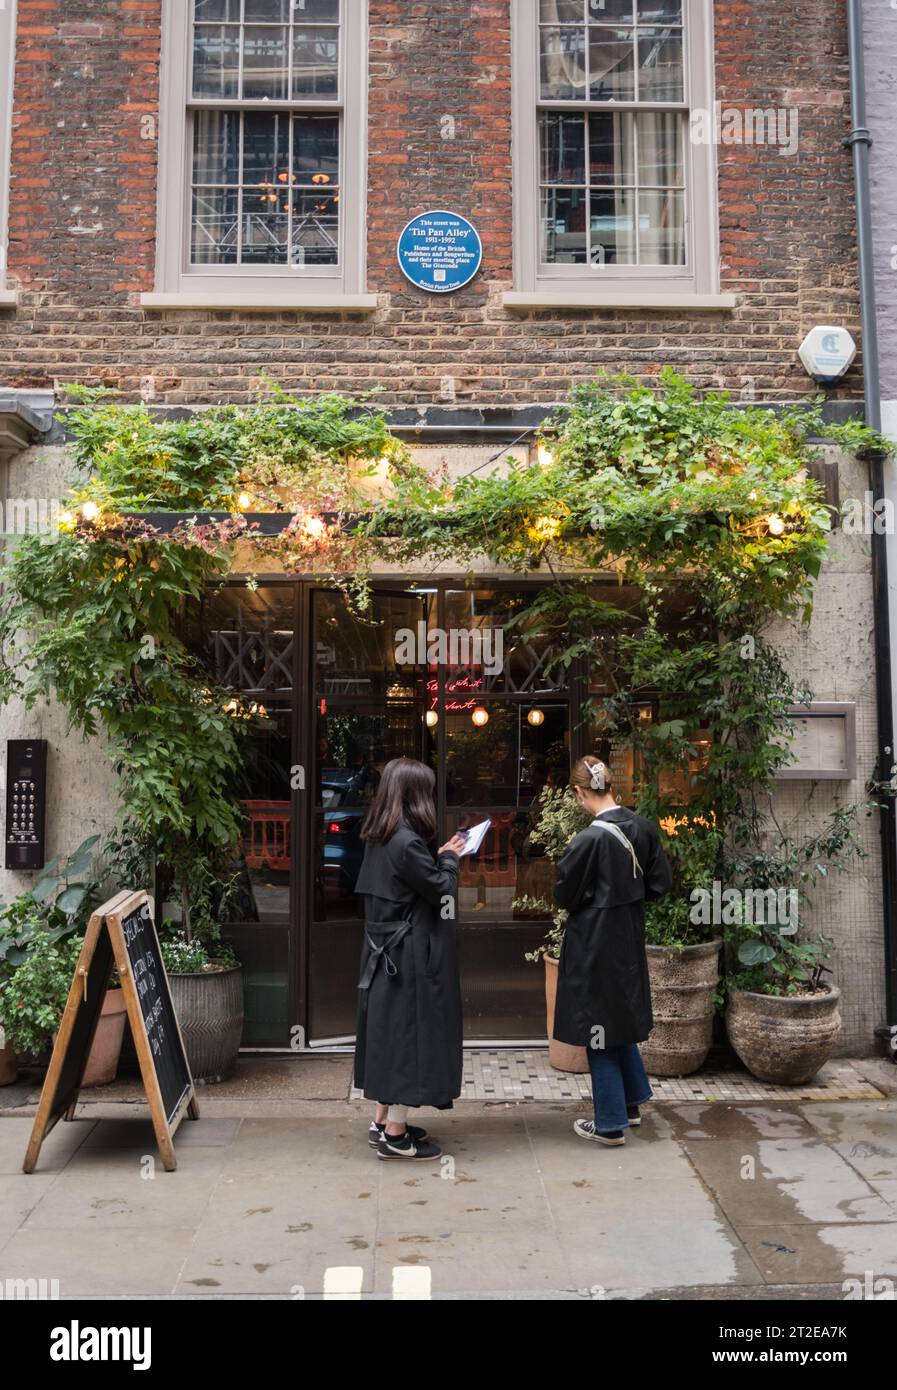 Gäste, die vor einem Restaurant unter einer blauen Tafel warten, die an die Lage der Tin Pan Alley in der Denmark Street, London, England, Großbritannien erinnert Stockfoto